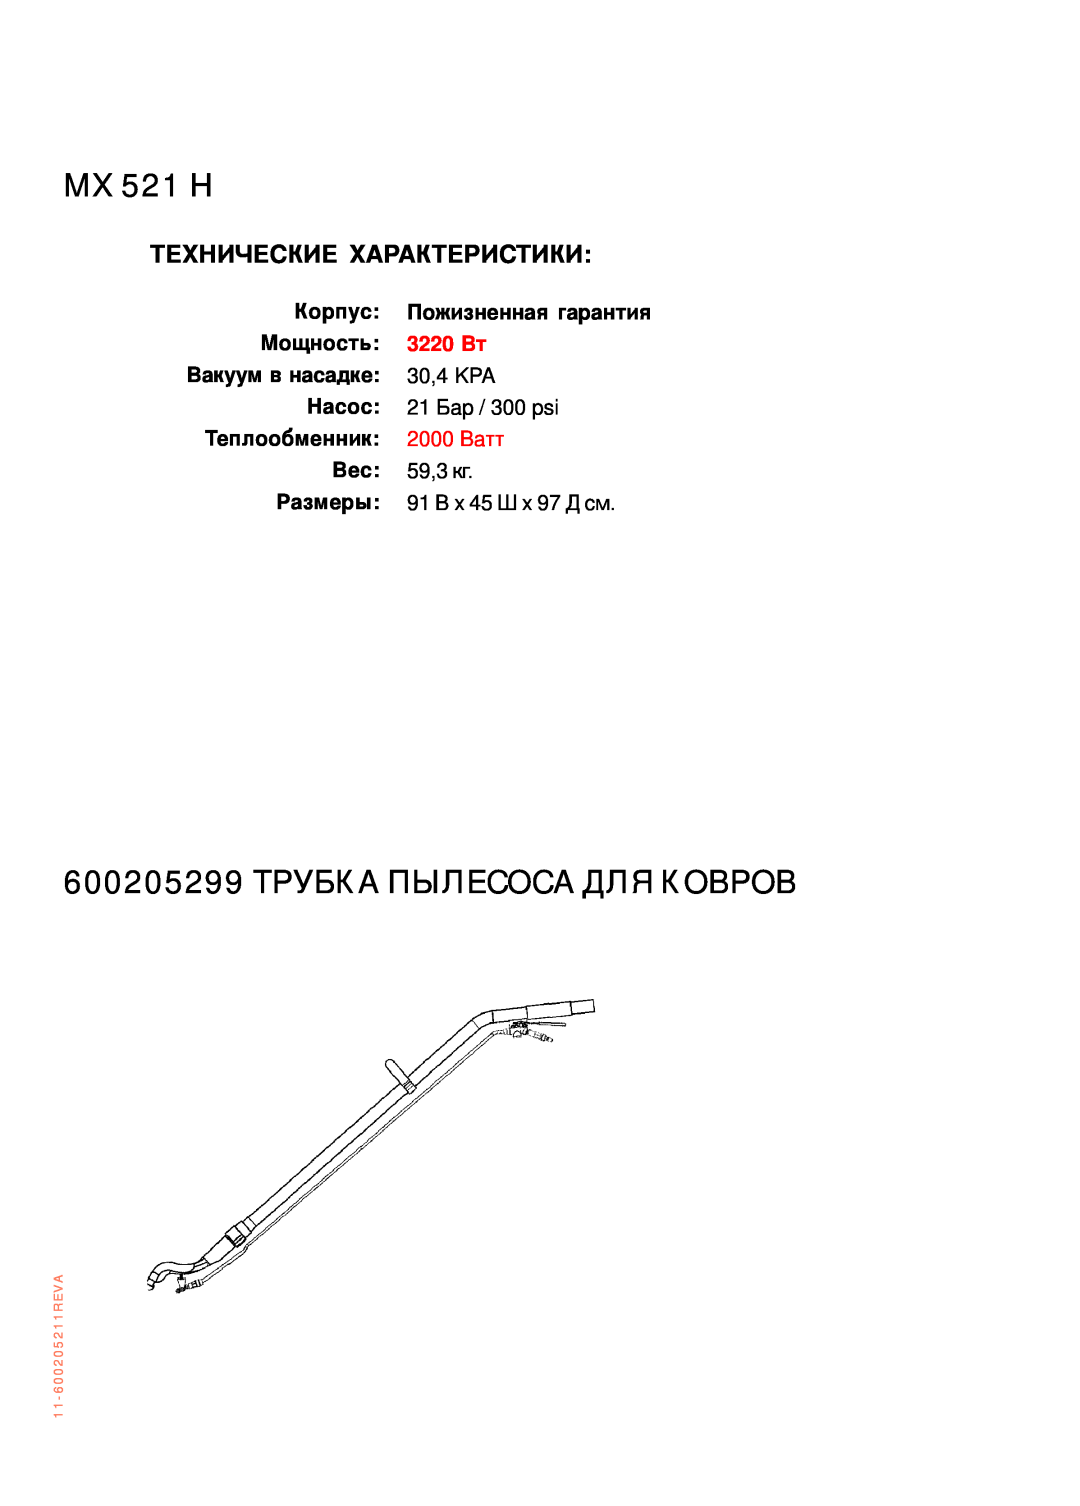 Nilfisk-ALTO MX 521 H manual Технические Характеристики, 600205299 ТРУБКА ПЫЛЕСОСА ДЛЯ КОВРОВ, Корпус, Пожизненная гарантия 